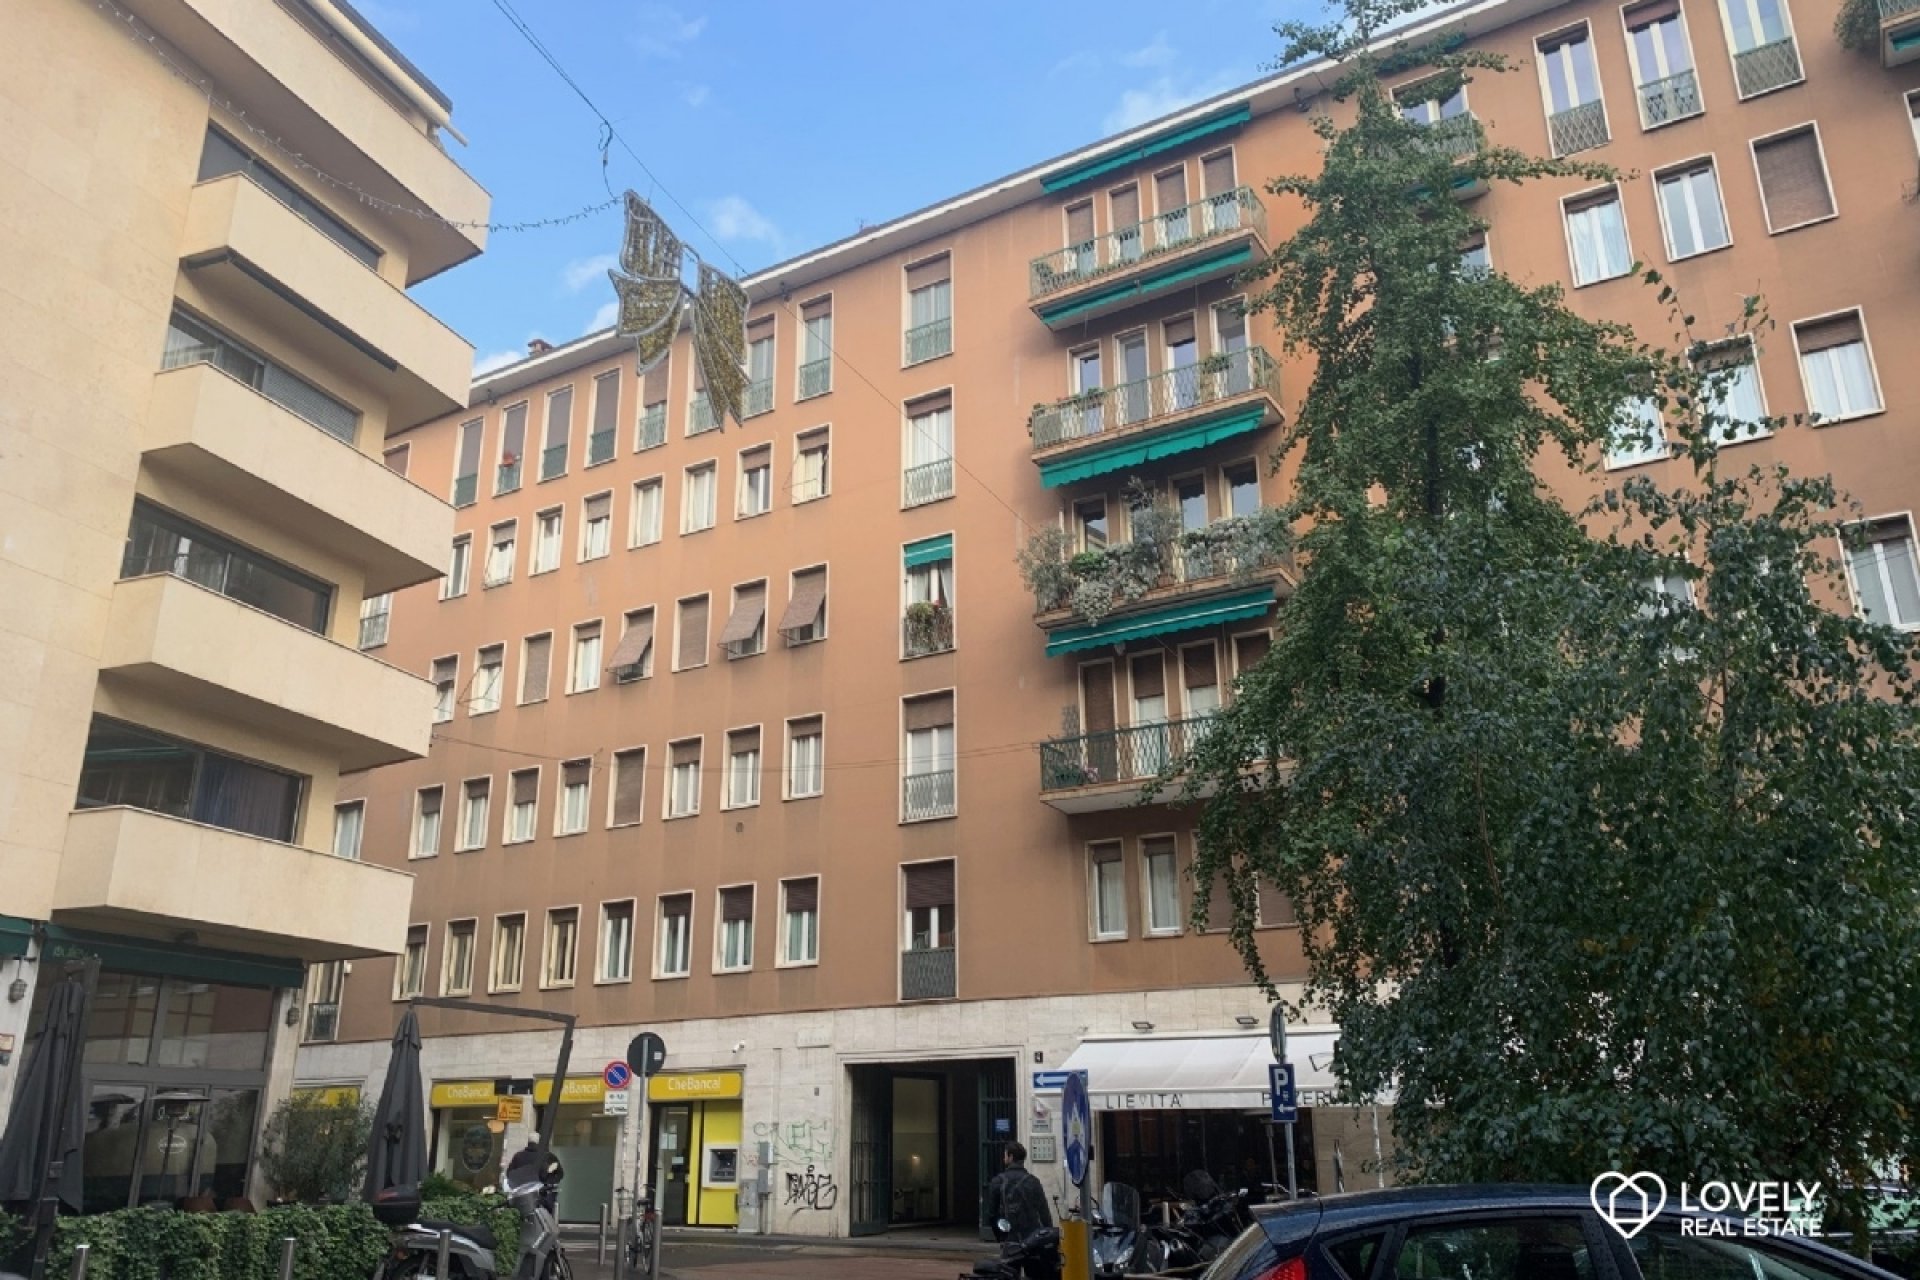 Affitto Appartamento Milano - AMPIO BILOCALE PIANO ALTO - MOSCOVA Località Arco della Pace - Arena - Moscova